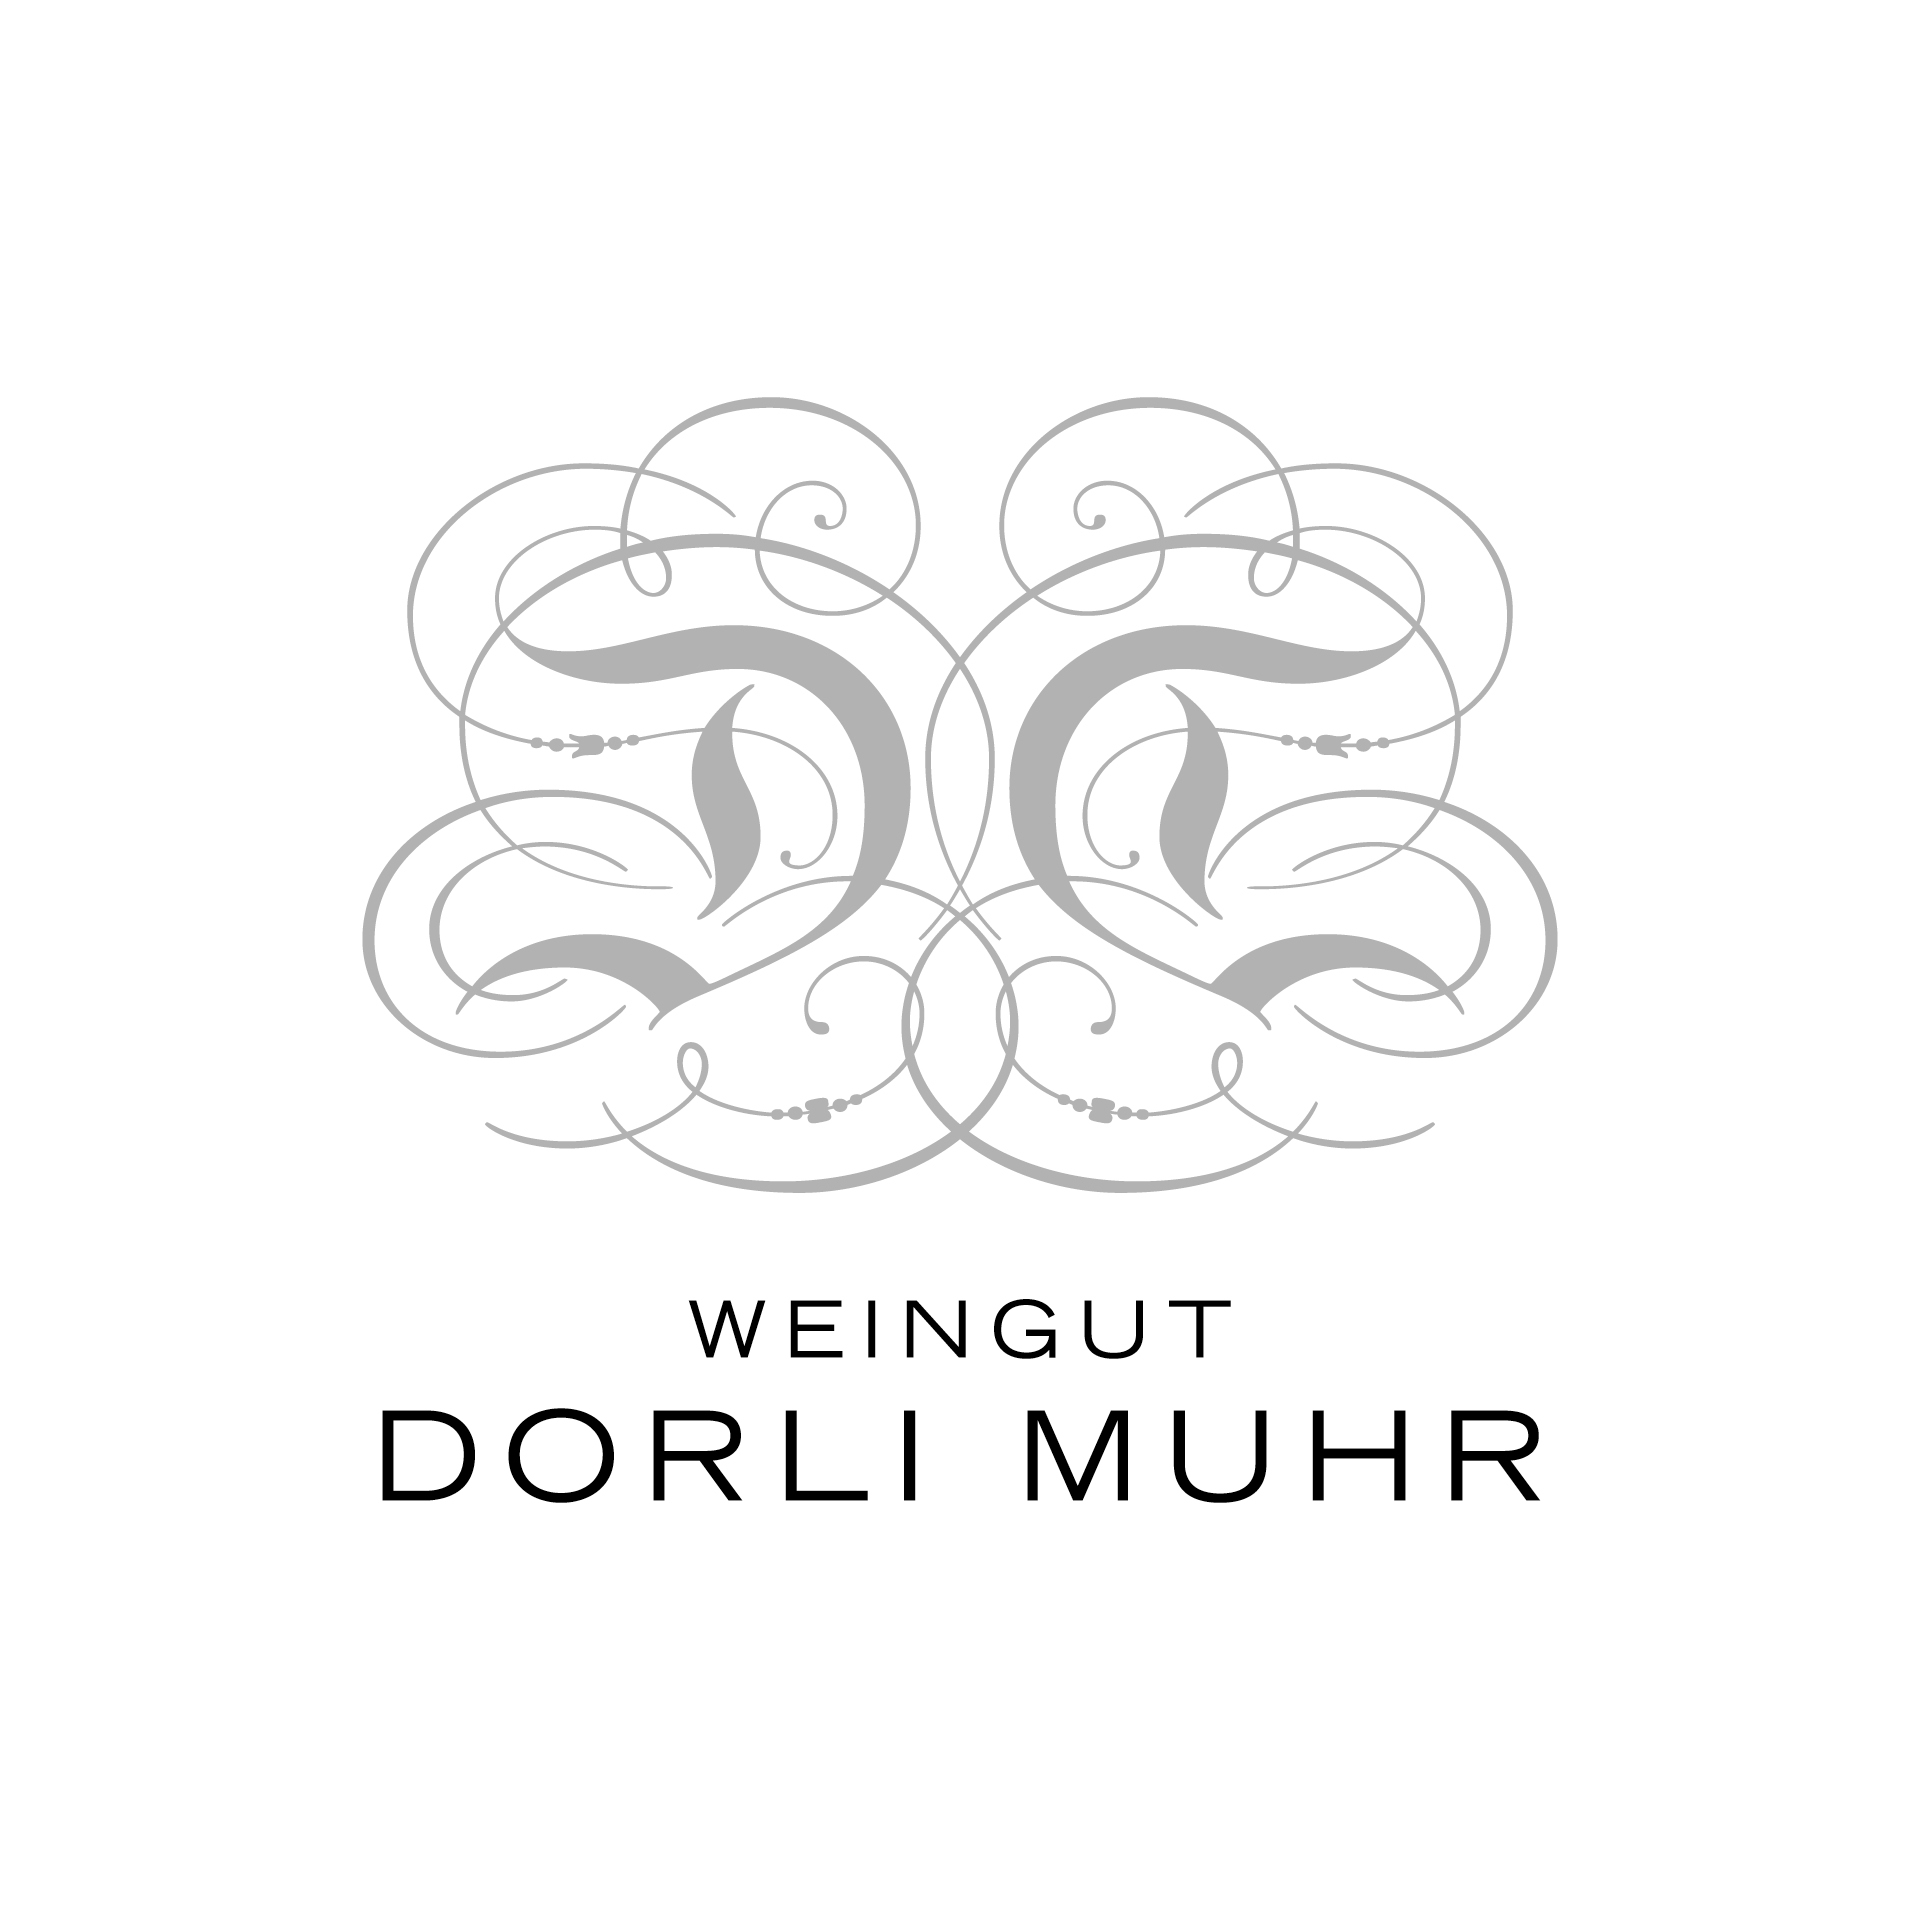 Dorli Muhr